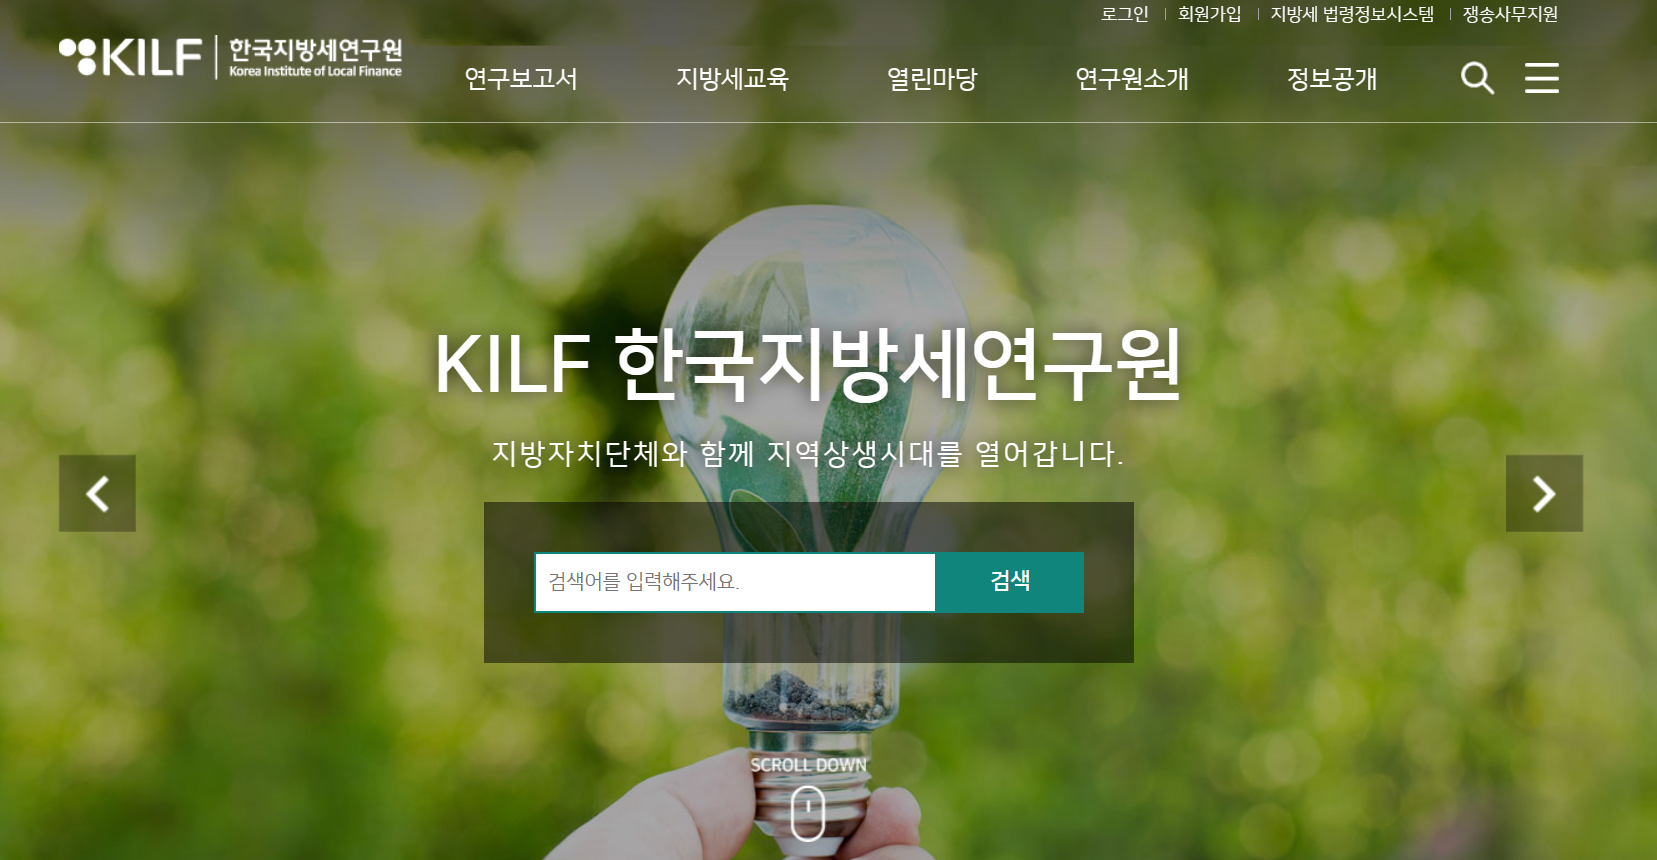 한국지방세연구원 홈페이지